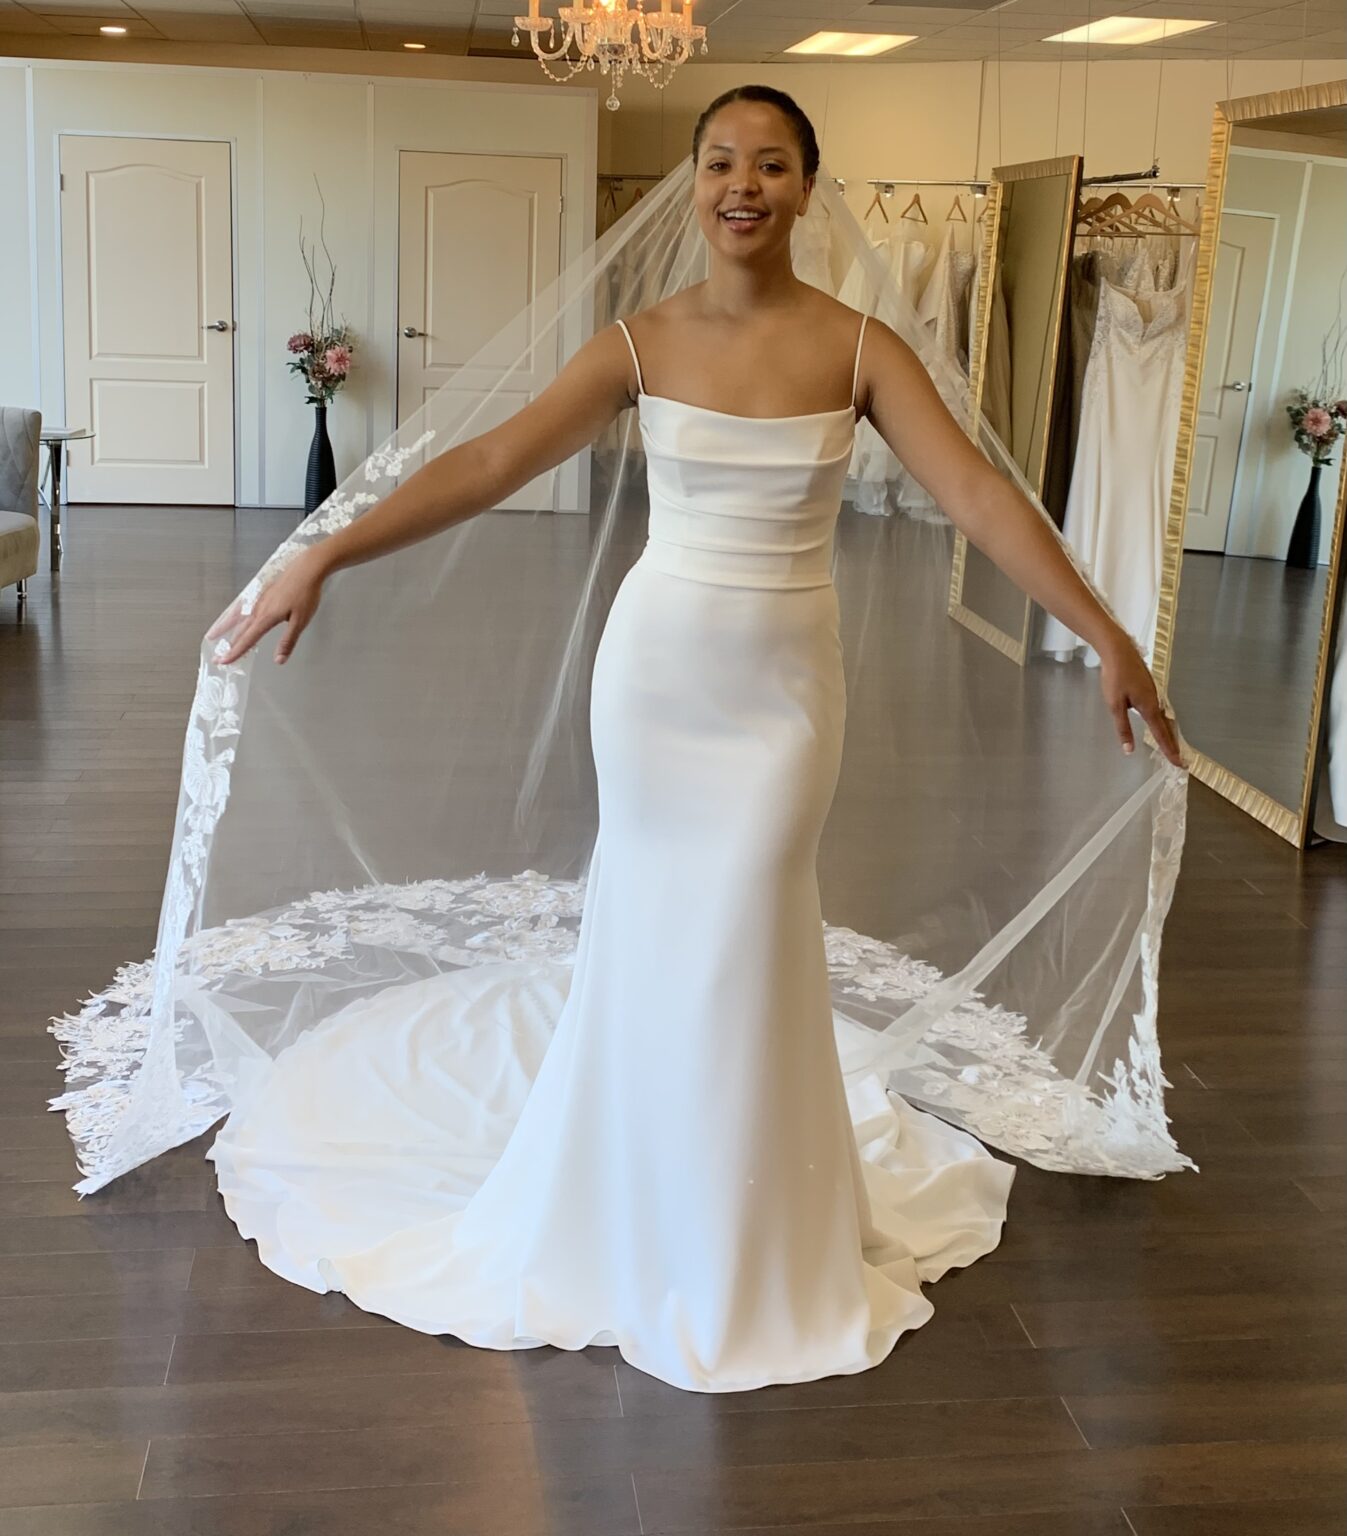 Bridal Wedding Dress Shop San Francisco Bay Area | Wedding Store Walnut ...